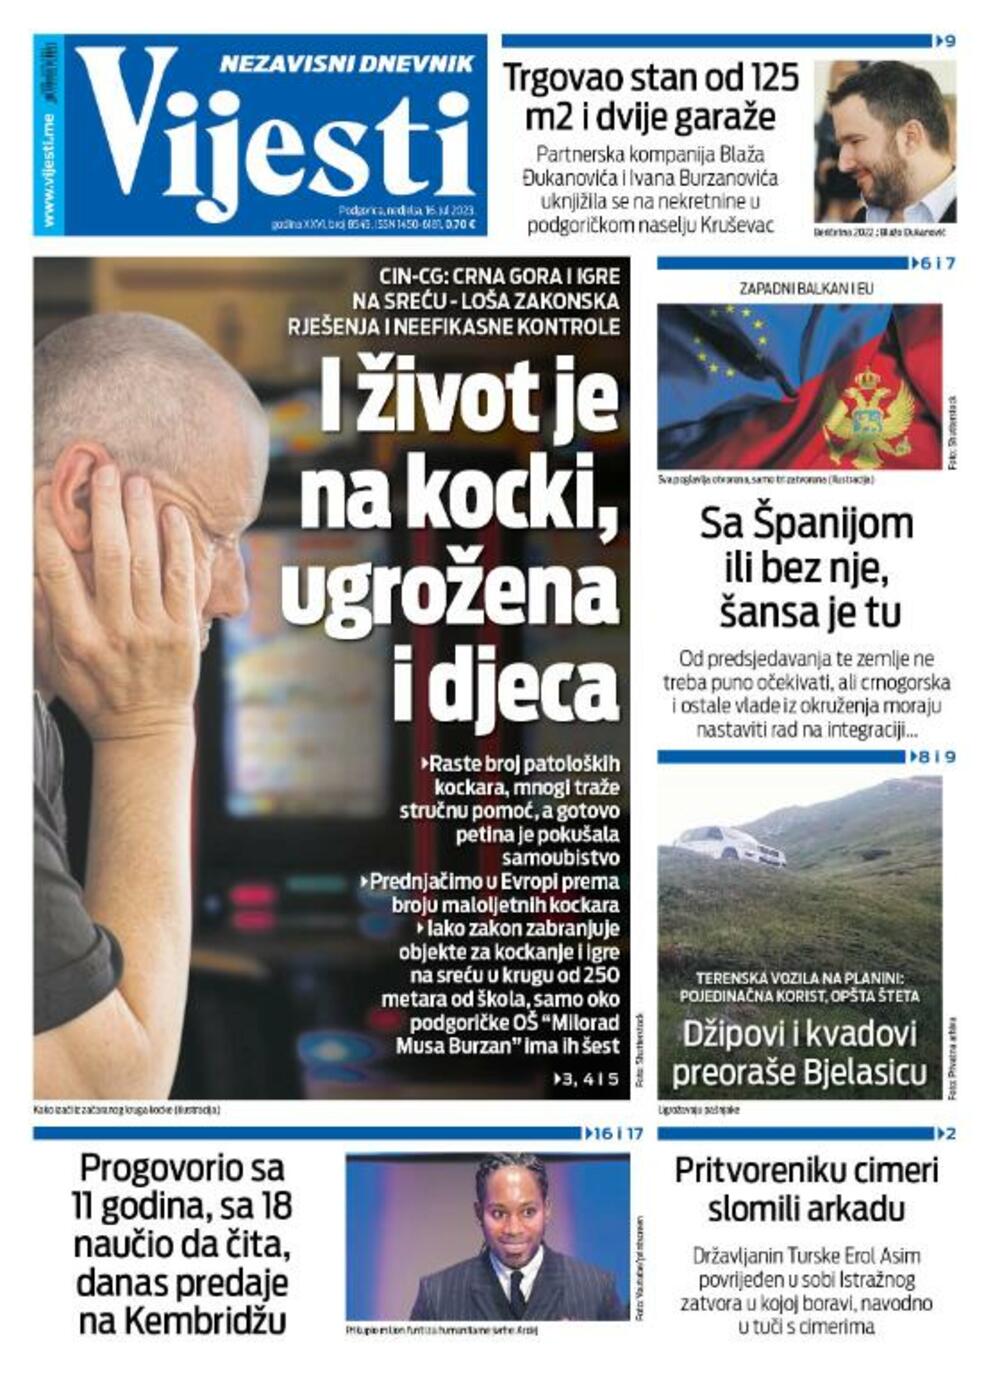 Naslovna strana "Vijesti" za 16. jul 2023., Foto: Vijesti